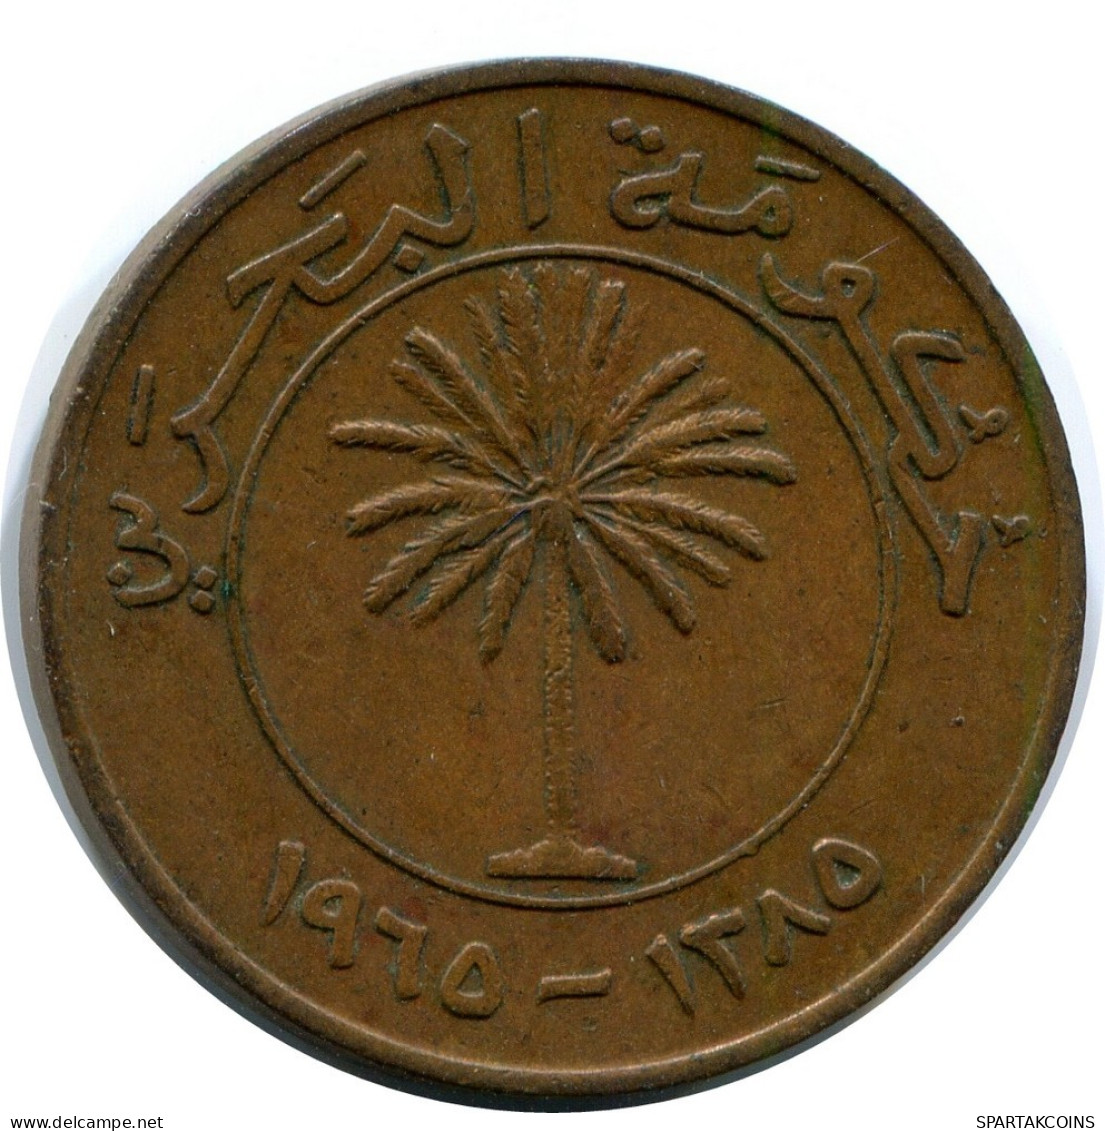 10 FILS 1970 BAHRAIN Coin #AP976.U.A - Bahrein